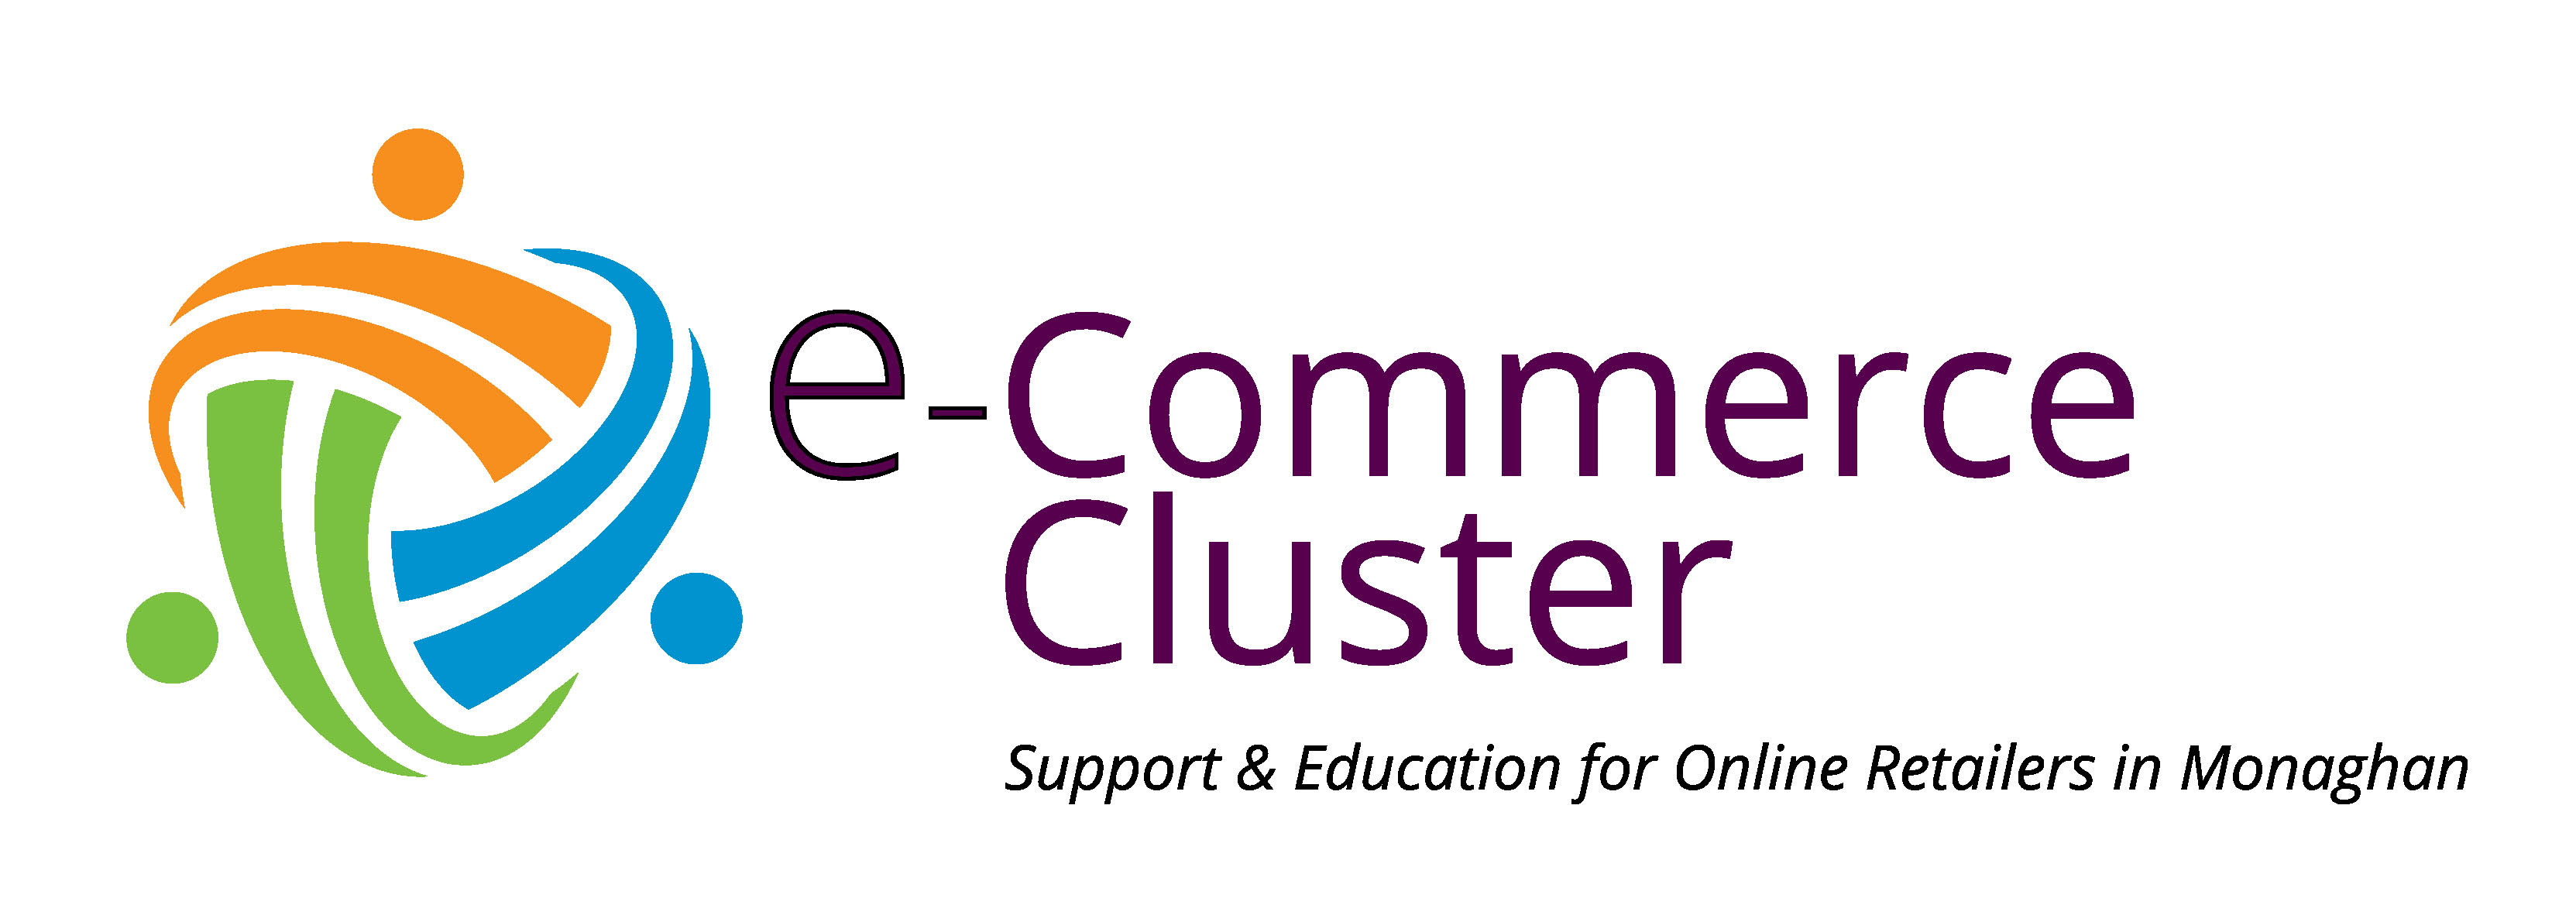 ecom cluster